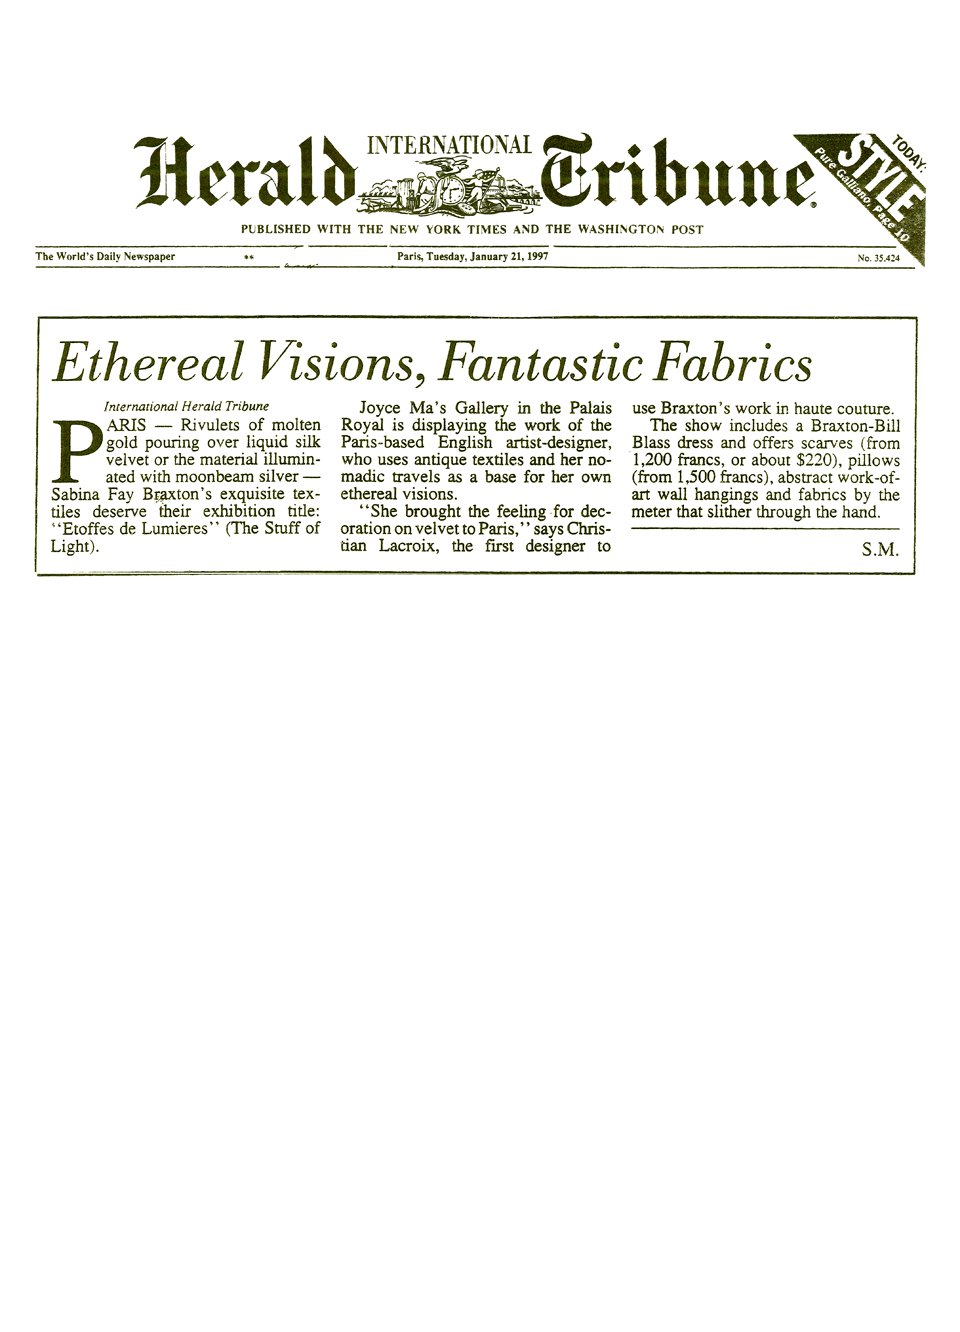 Herald Tribune - January 1997